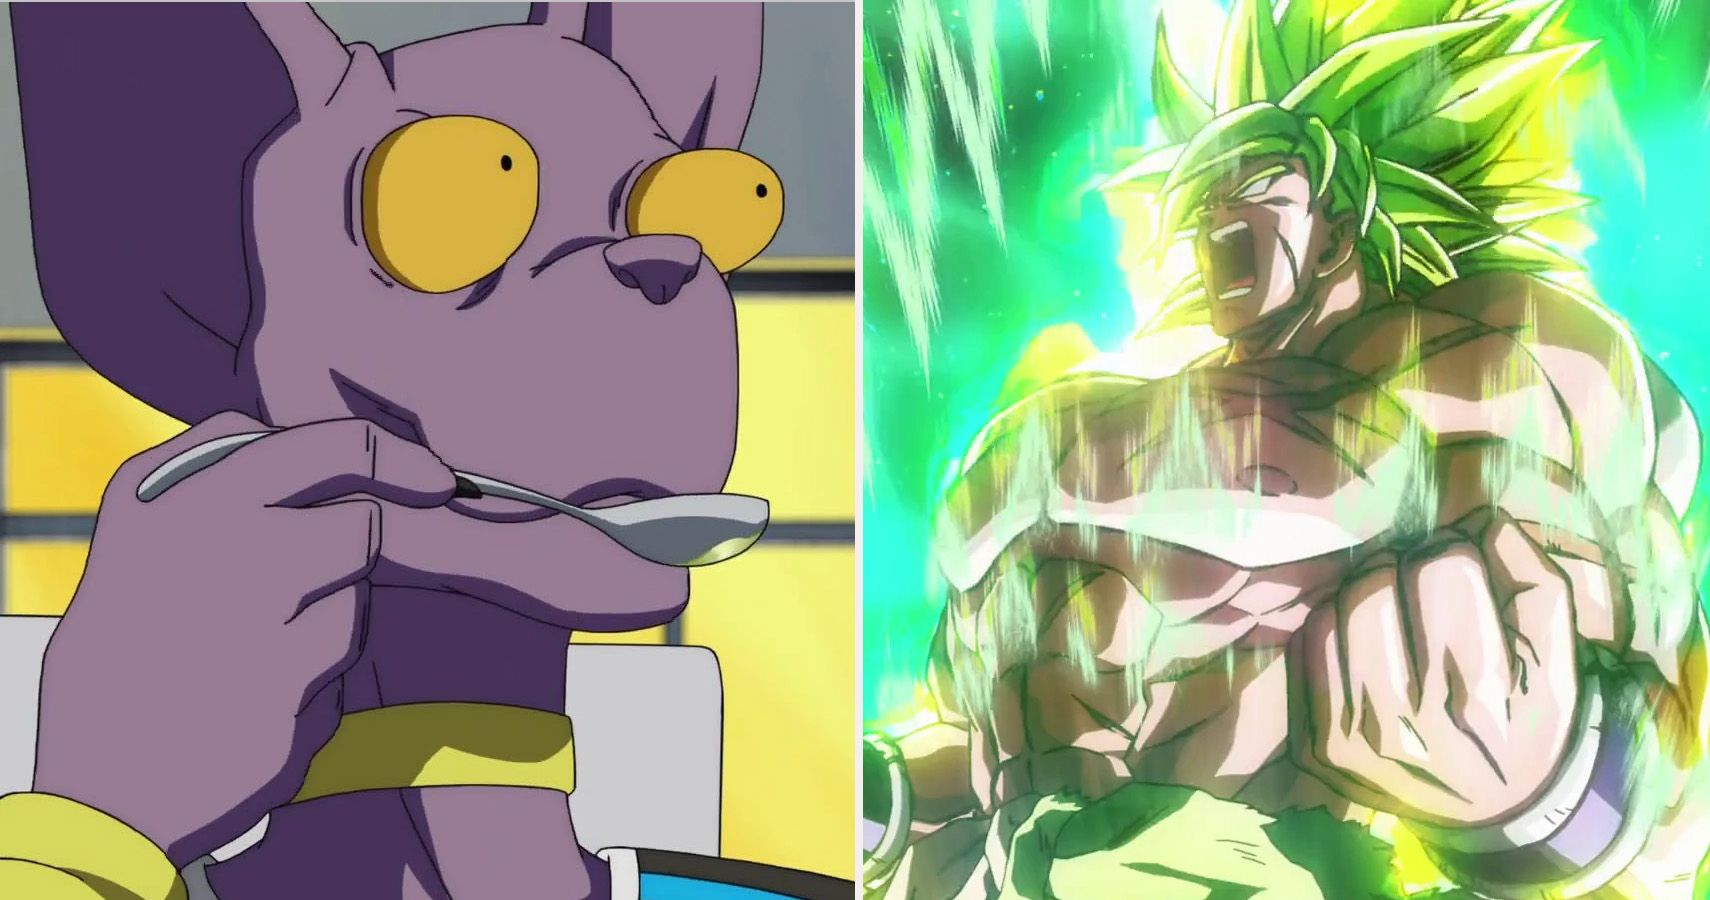 SSJ5 Goku & Vegeta VS SSGSS Goku & Vegeta